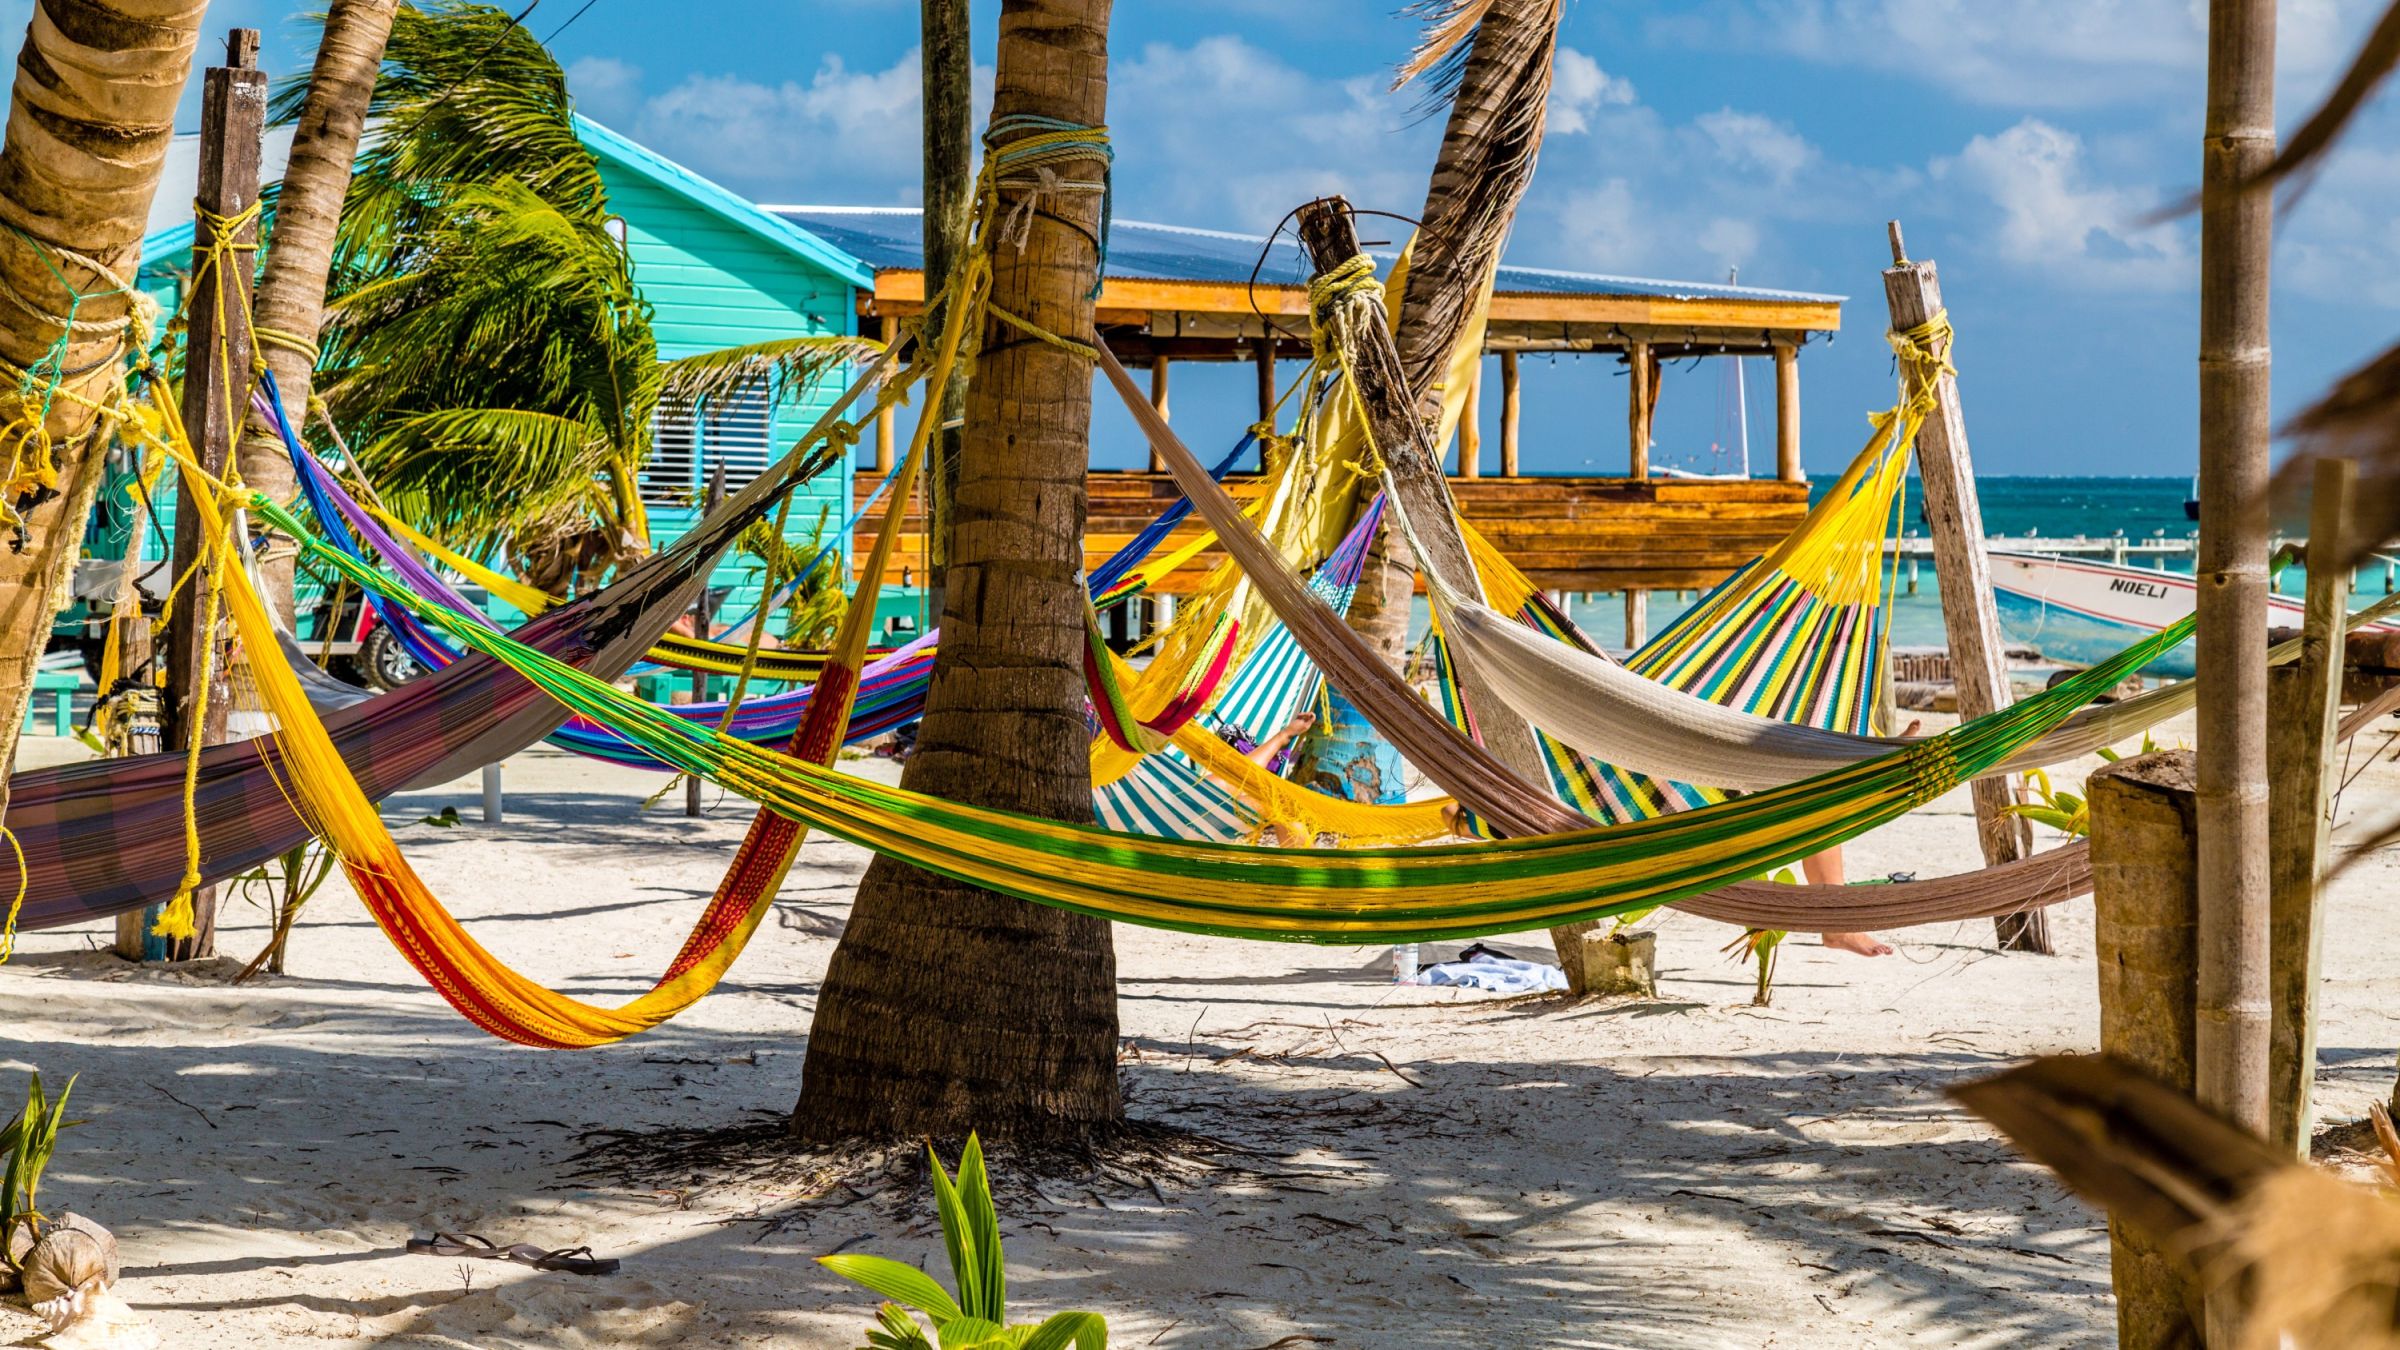 Hängemattenflair auf der karibischen Insel Caye Caulker – hier lässt es sich herrlich entspannen